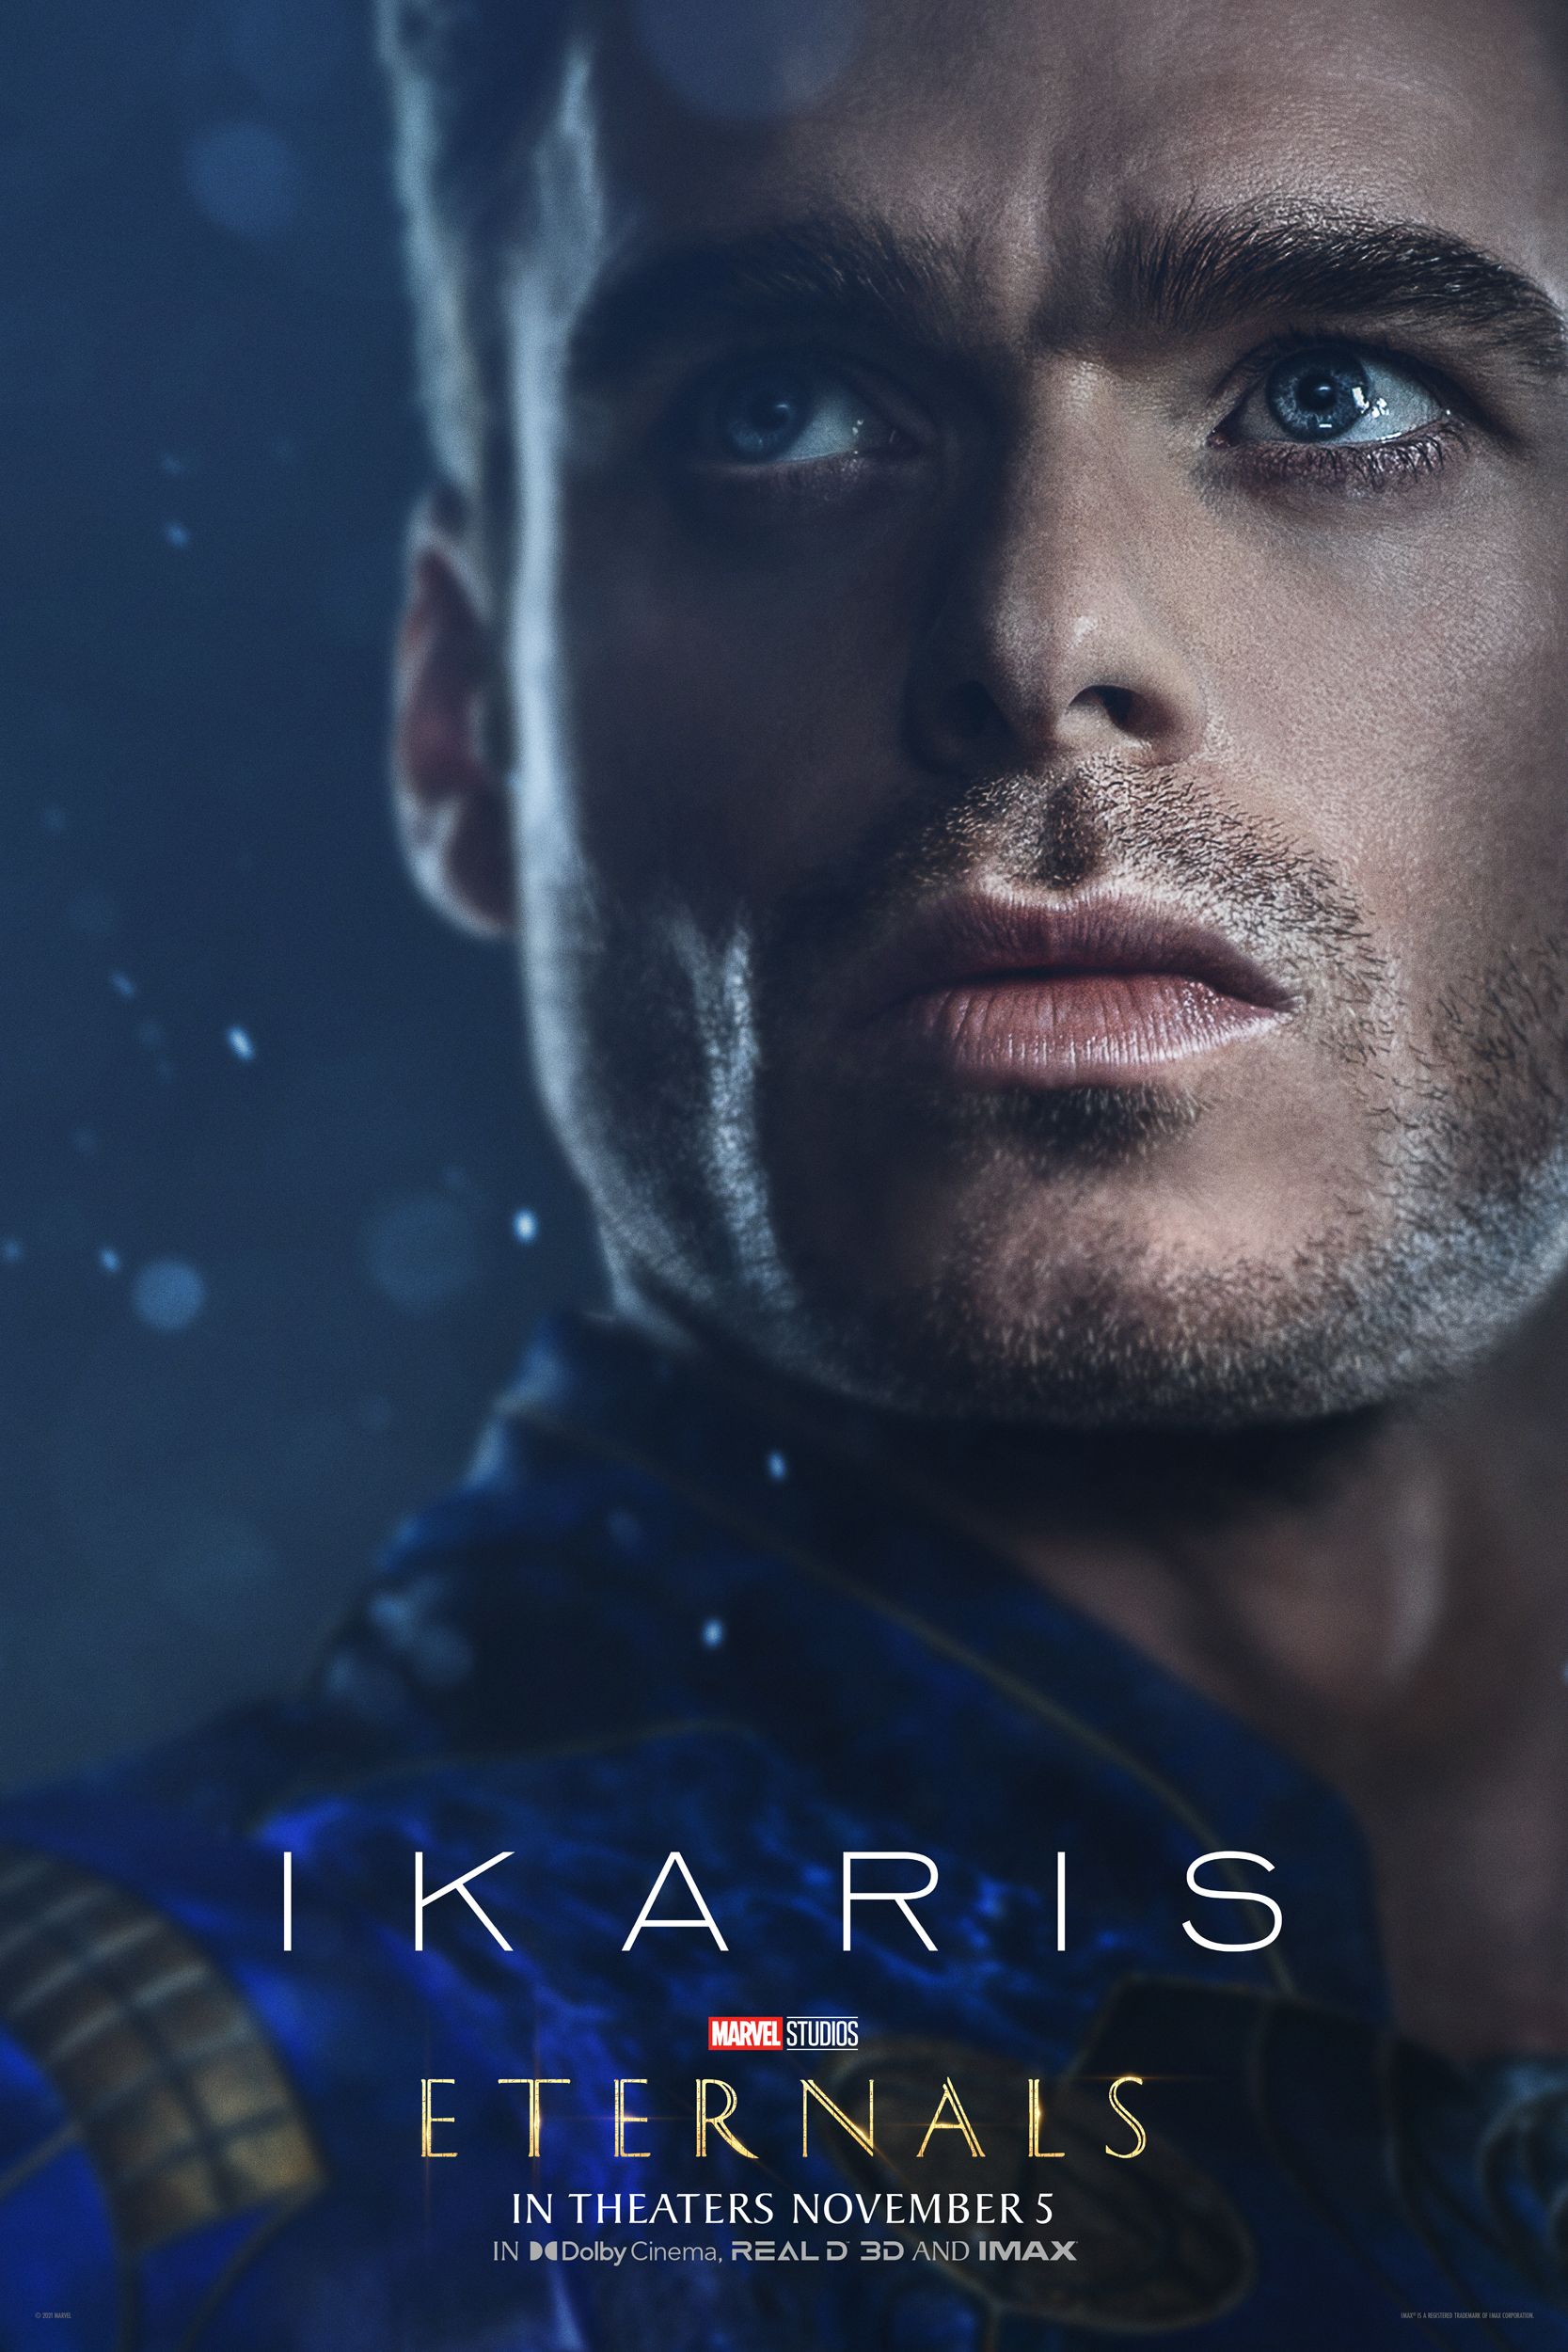 Eternals poster 2 - Ikaris